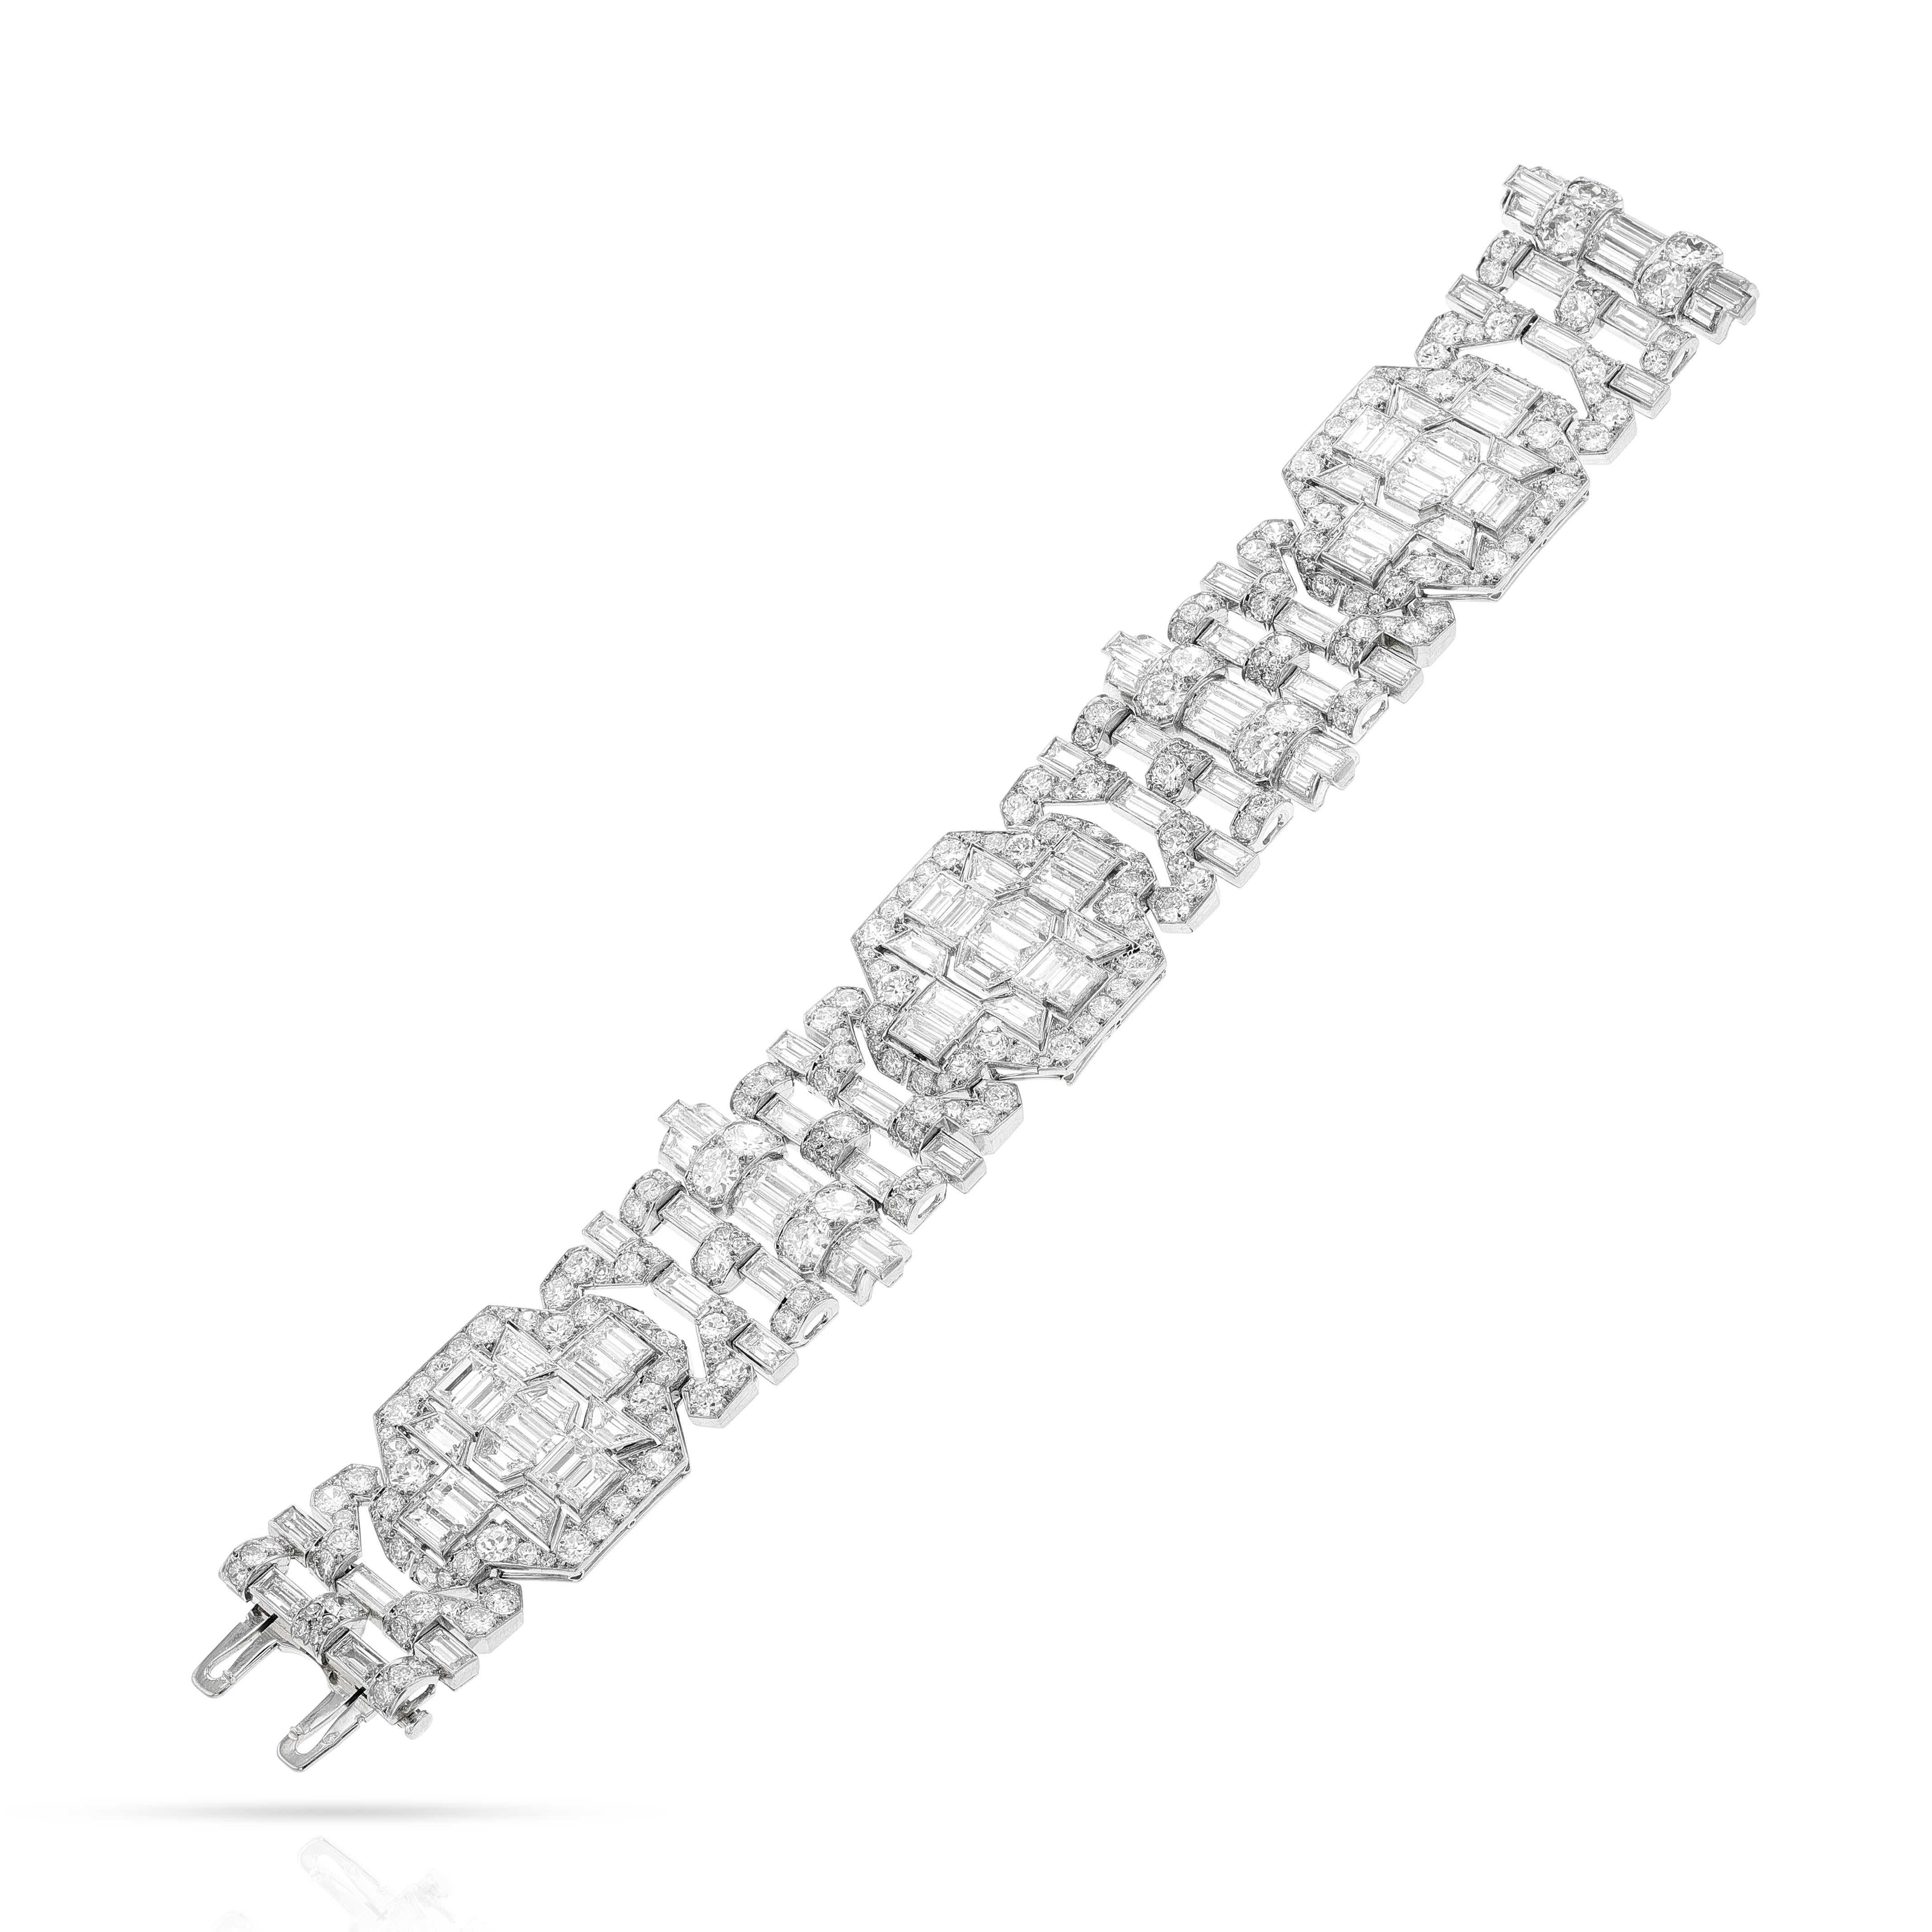 Mauboussin Paris Art Deco Diamant und Platin Armband. Die Diamanten wiegen ca. 40-50 Karat. Die Länge beträgt 7 Zoll. Das Gesamtgewicht beträgt 68,60 Gramm. Die Breite des Armbands reicht von 0,80 Zoll bis 1 Zoll.